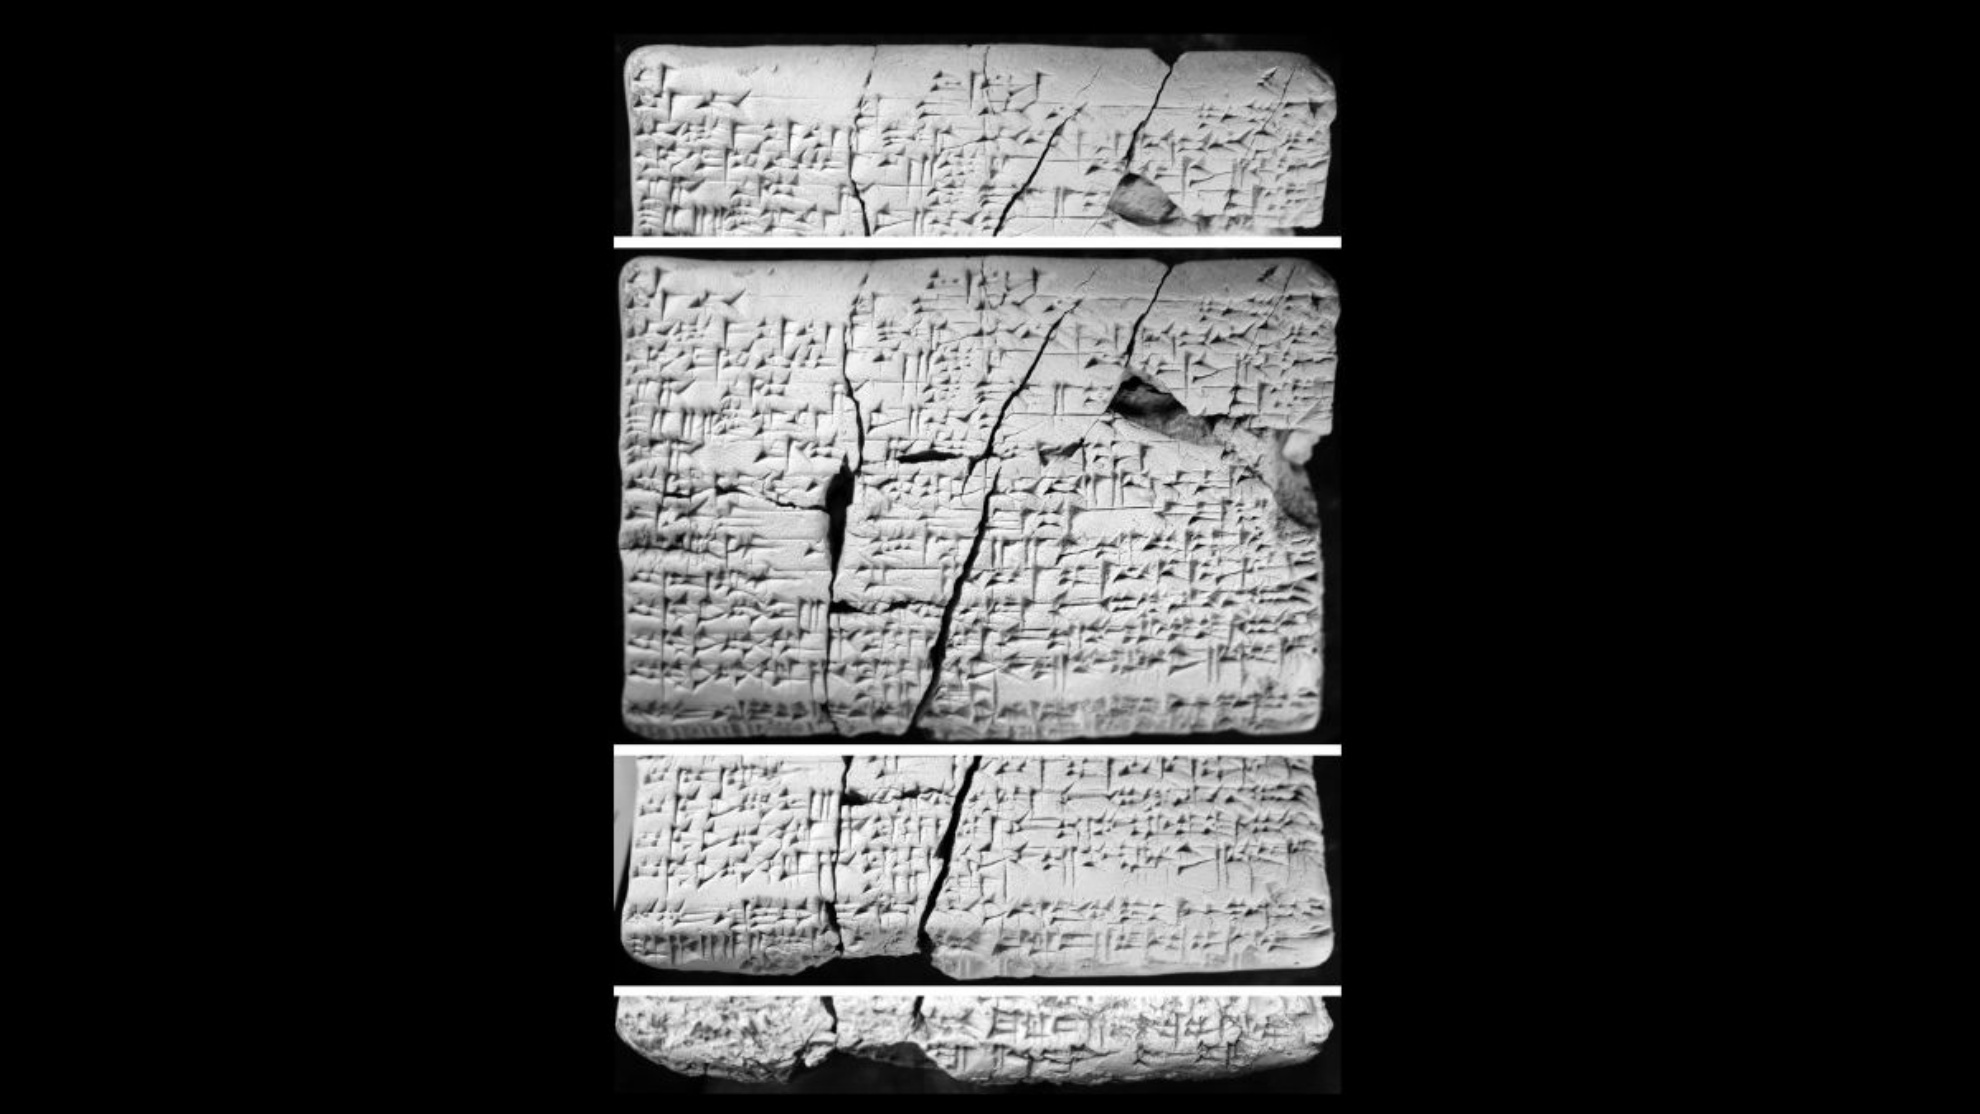 Tabletat u gjetën në Irak rreth 30 vjet më parë. Studiuesit filluan t'i studiojnë ato në vitin 2016 dhe zbuluan se ato përmbajnë detaje në gjuhën akadiane të gjuhës "të humbur" amorite.